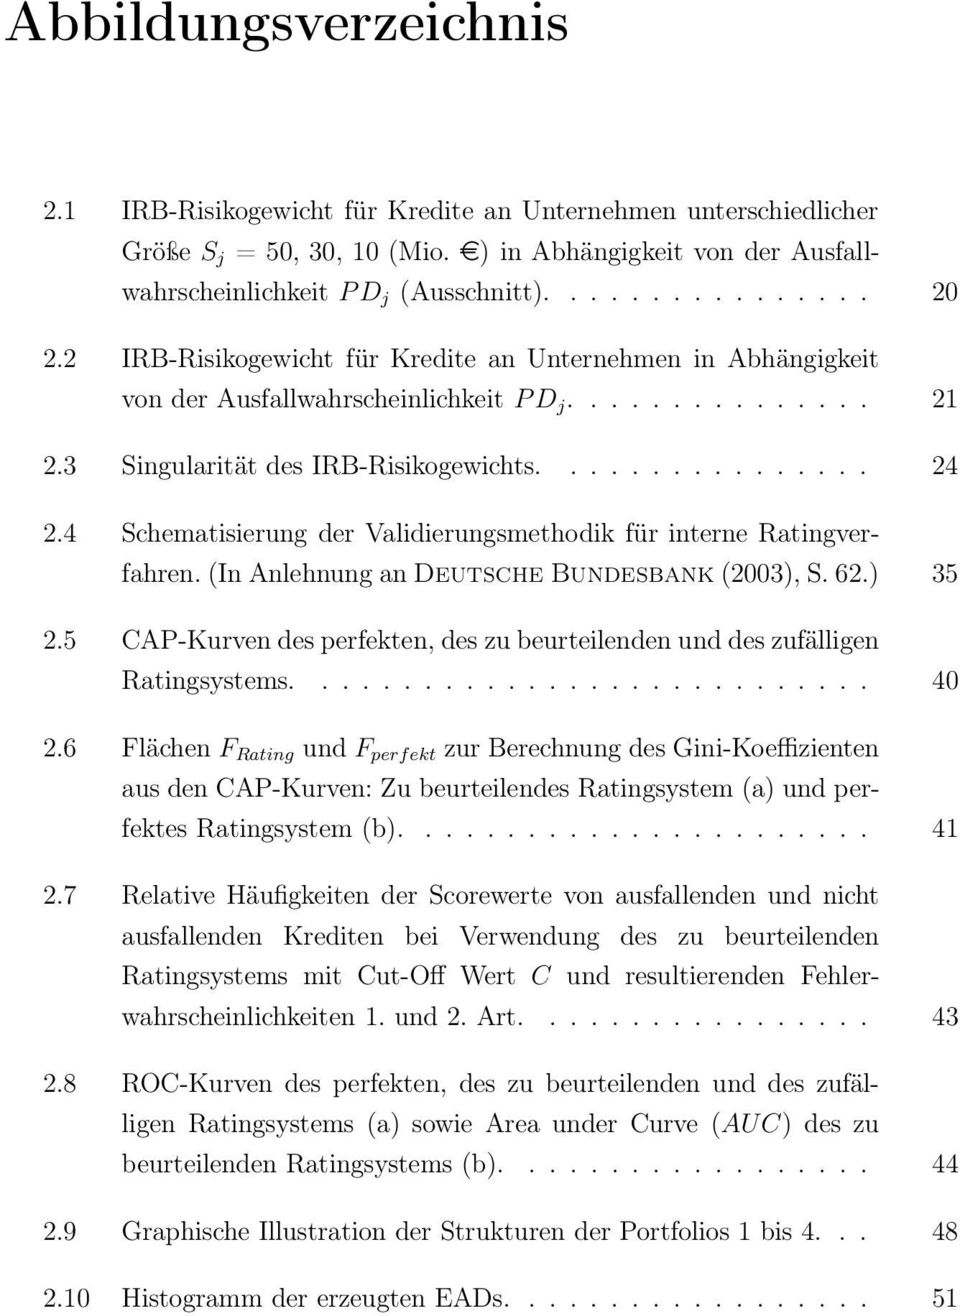 4 Schematisierung der Validierungsmethodik für interne Ratingverfahren. (In Anlehnung an Deutsche Bundesbank (2003), S. 62.) 35 2.